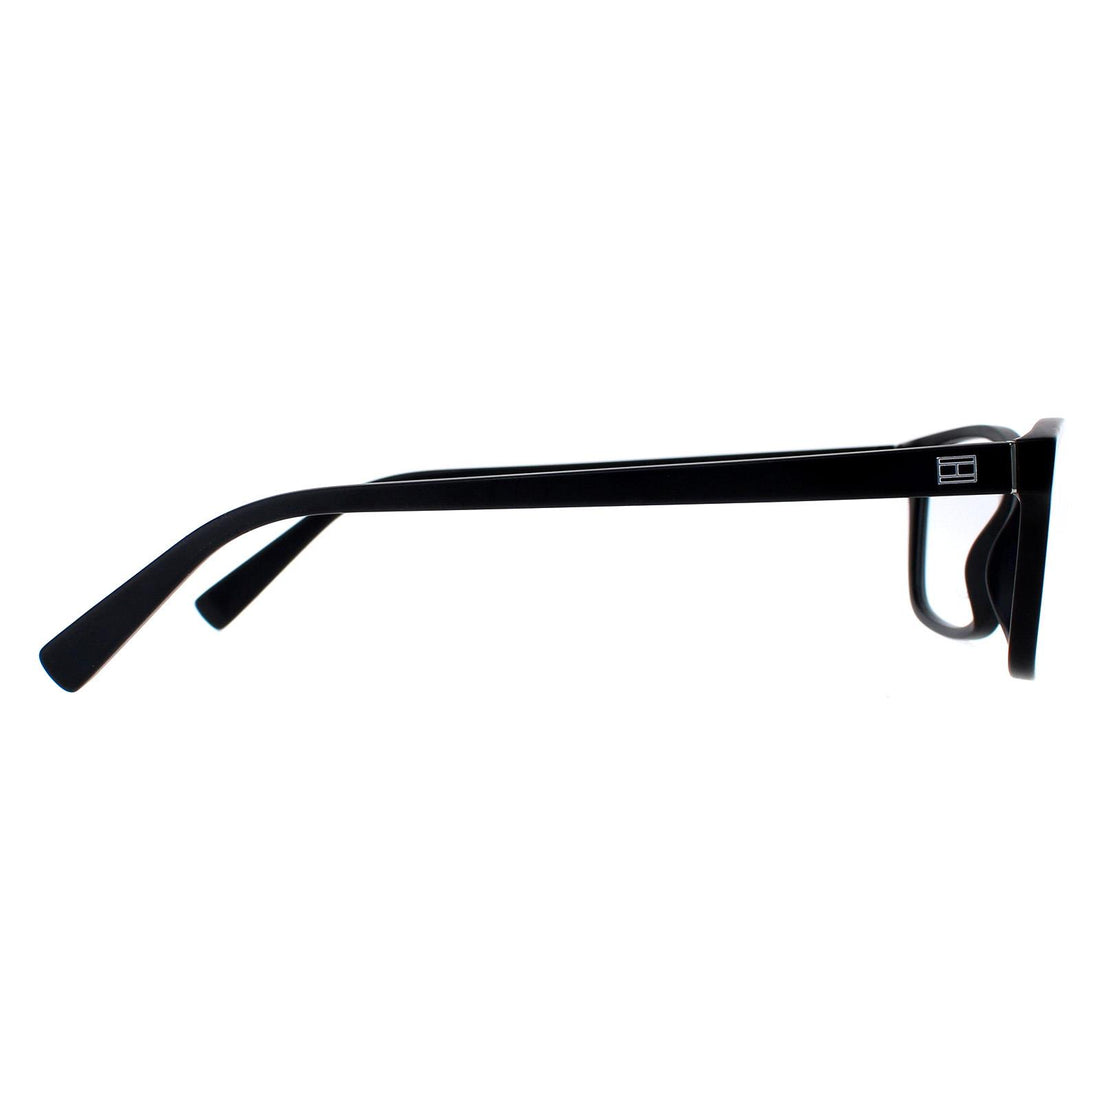 Tommy Hilfiger Glasses Frames TH1760 003 Matte Black Men Women